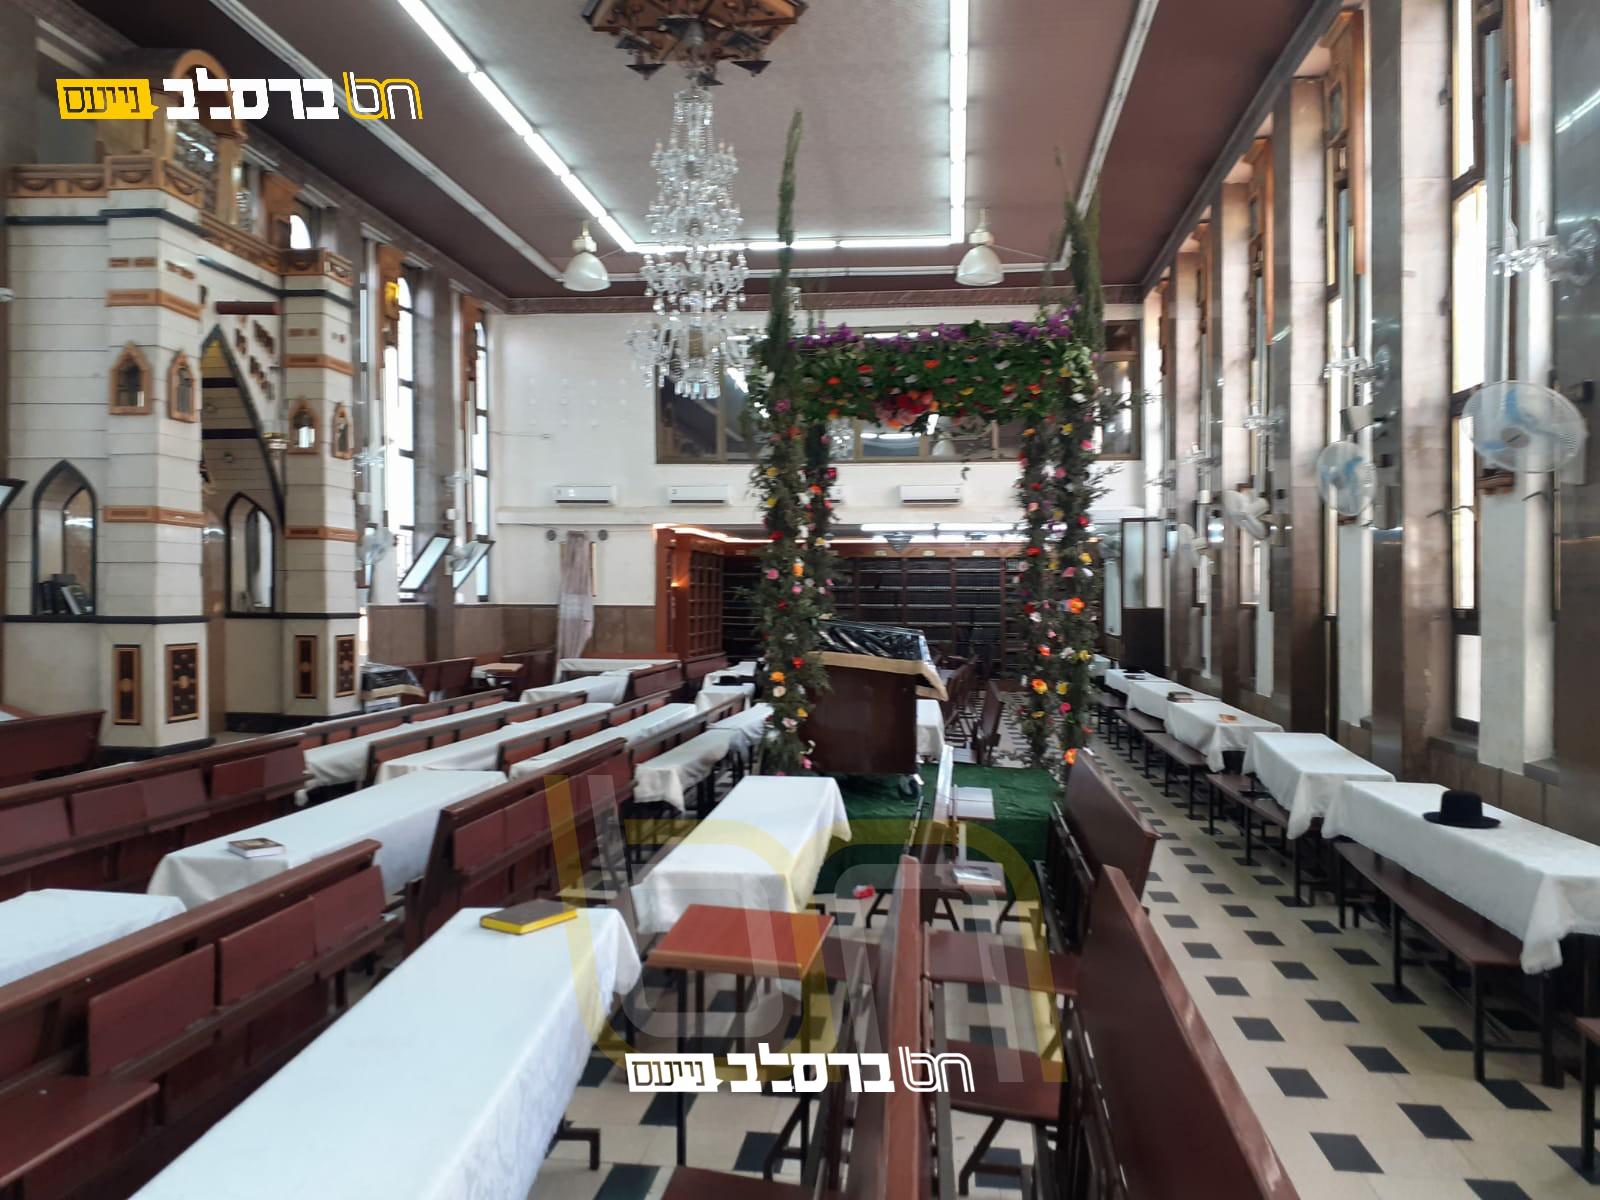 צִצִּים וּפְרָחִים • בית הכנסת הגדול שבירושלים בחופת עצים ופרחים לקראת חג השבועות